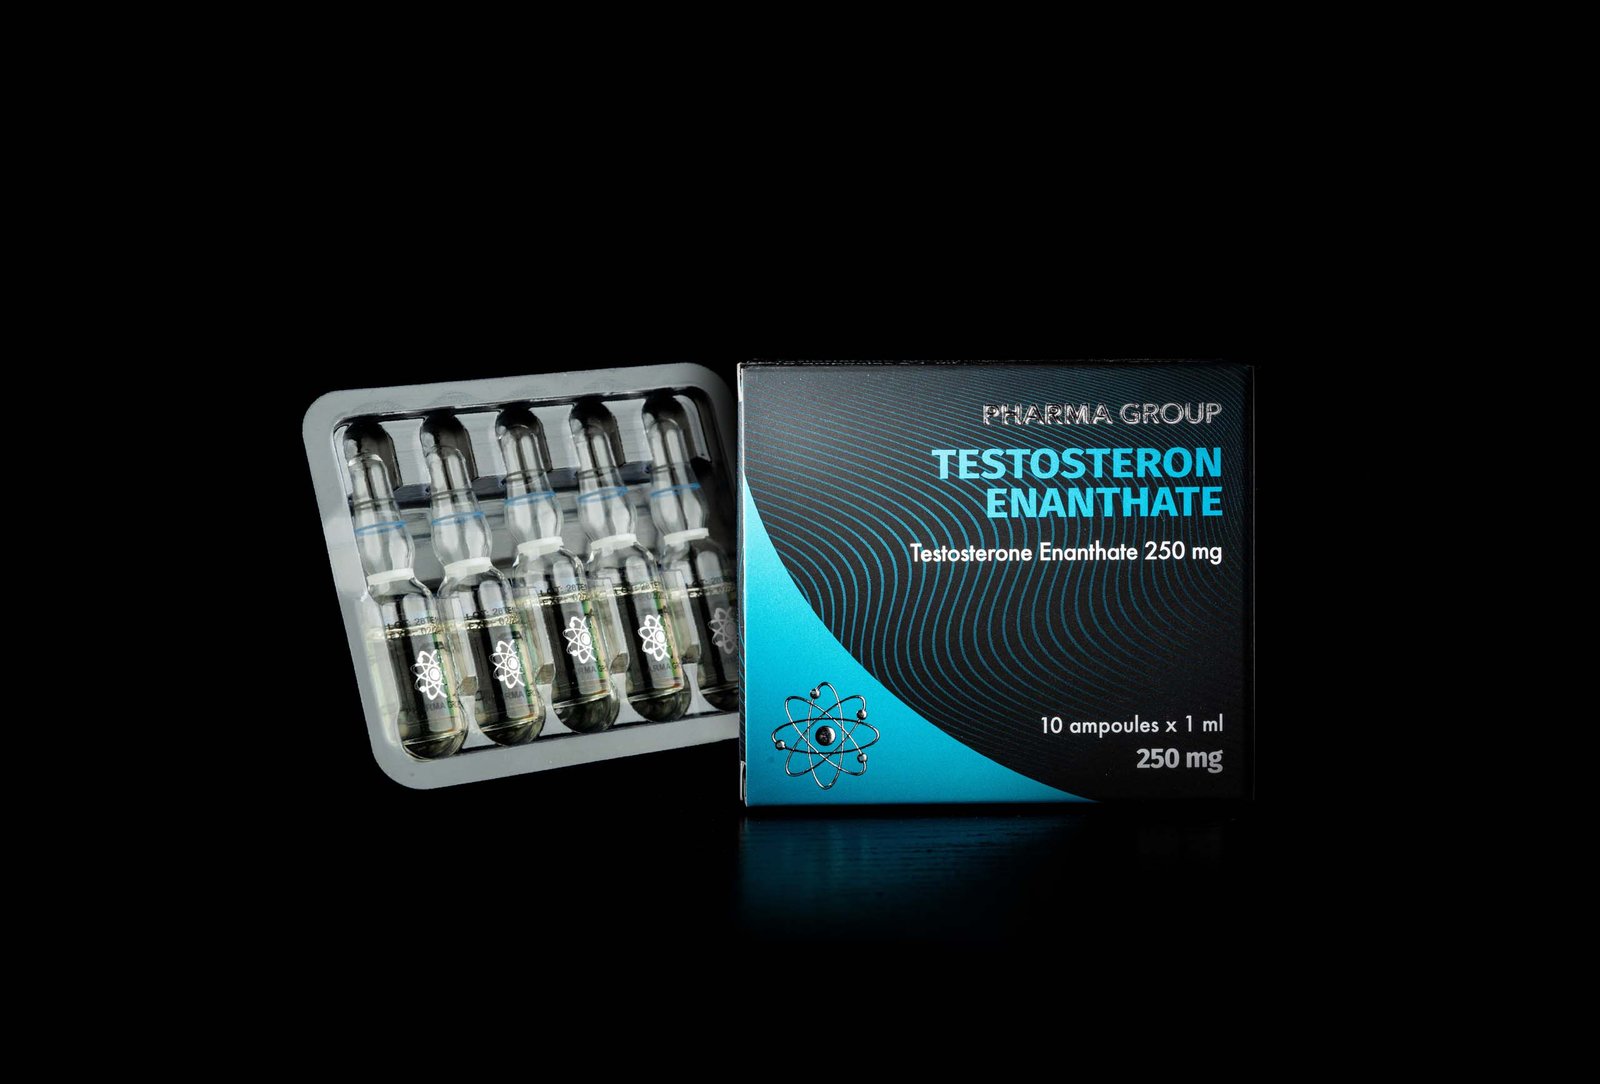 Pharma Group Testosteron Enanthate 250